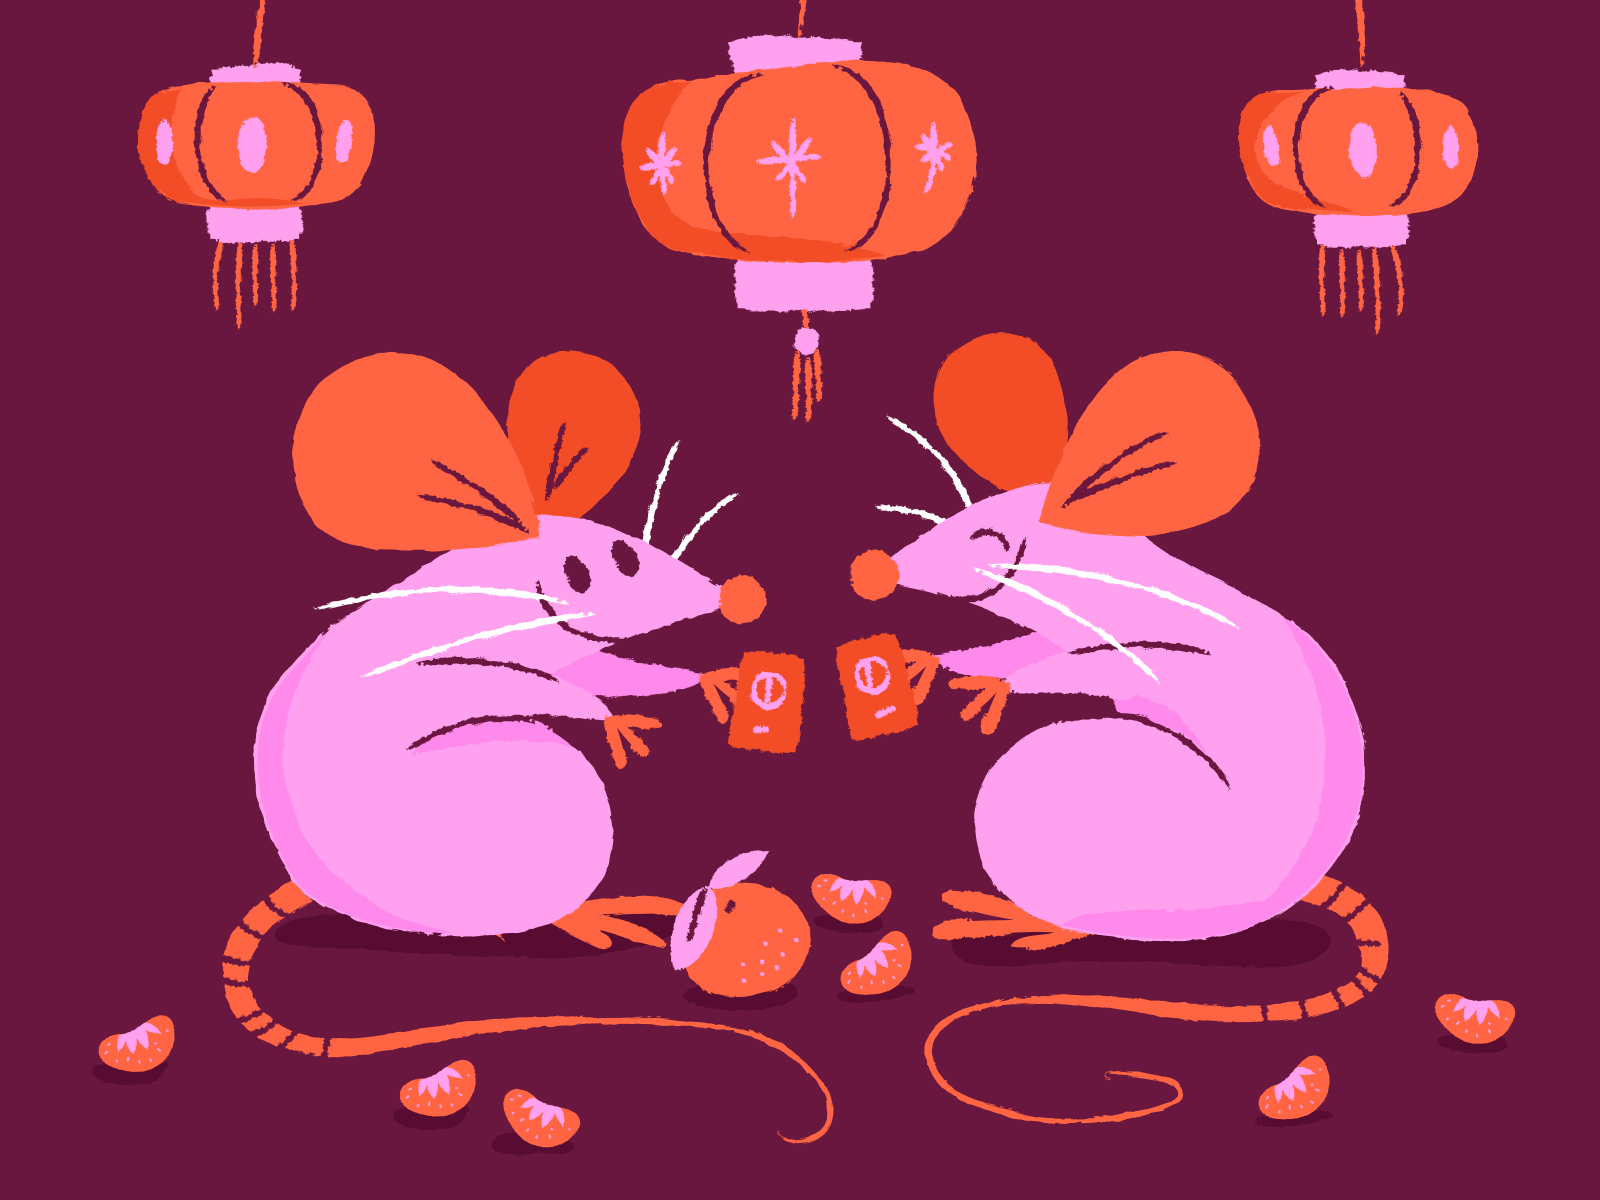 Ilustração de dois ratos conversando à luz de lâmpadas chinesas. Ao chão, pedaços de frutas estão espalhados.